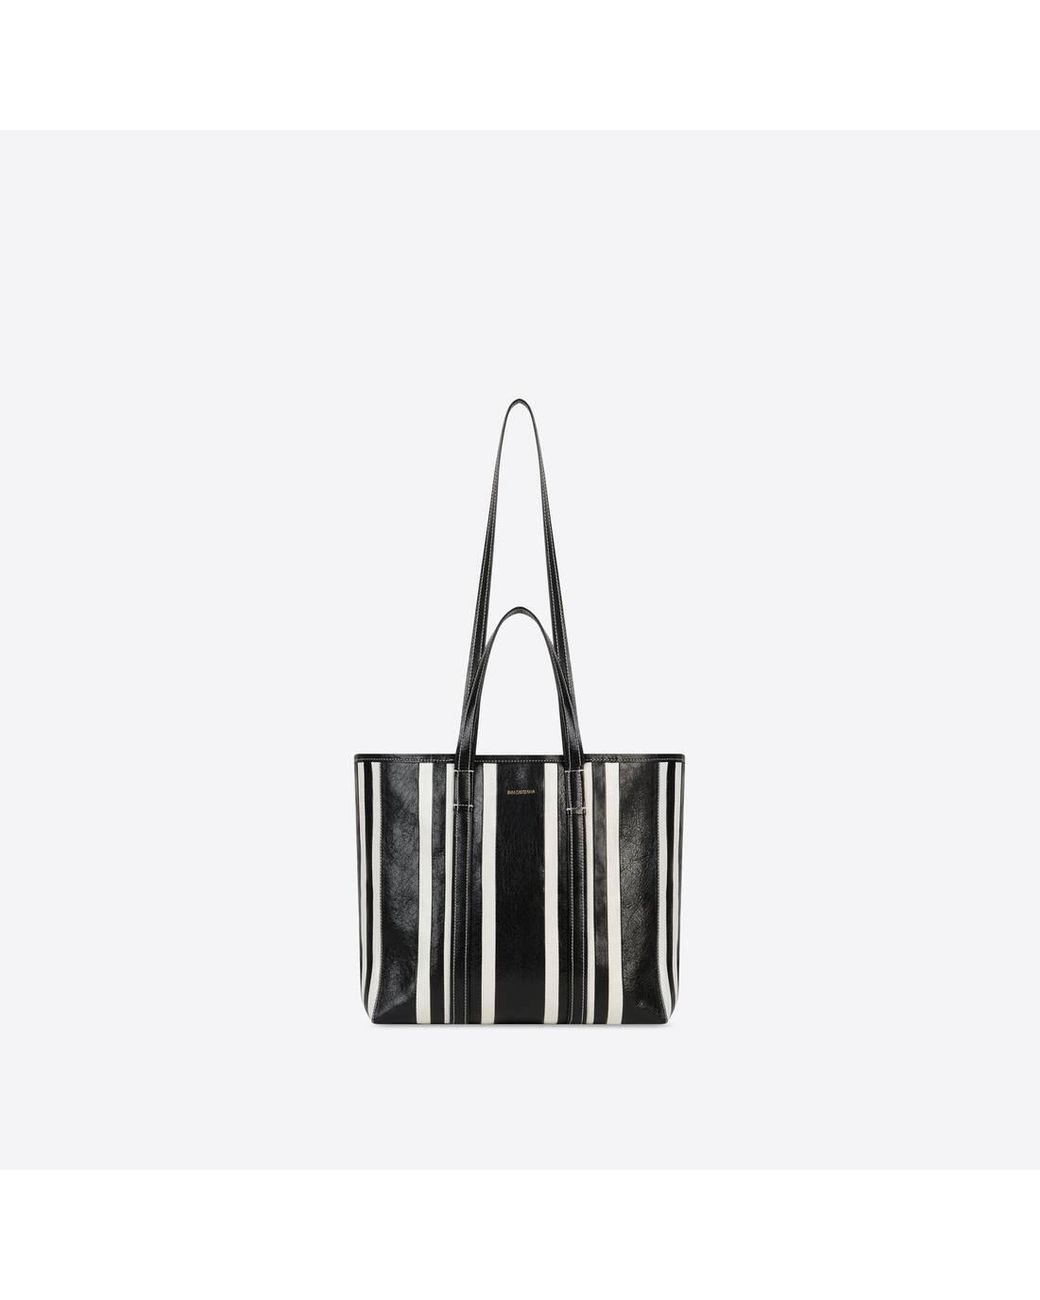 Balenciaga Leather Barbes Medium East-west Shopper Bag in Black - Lyst